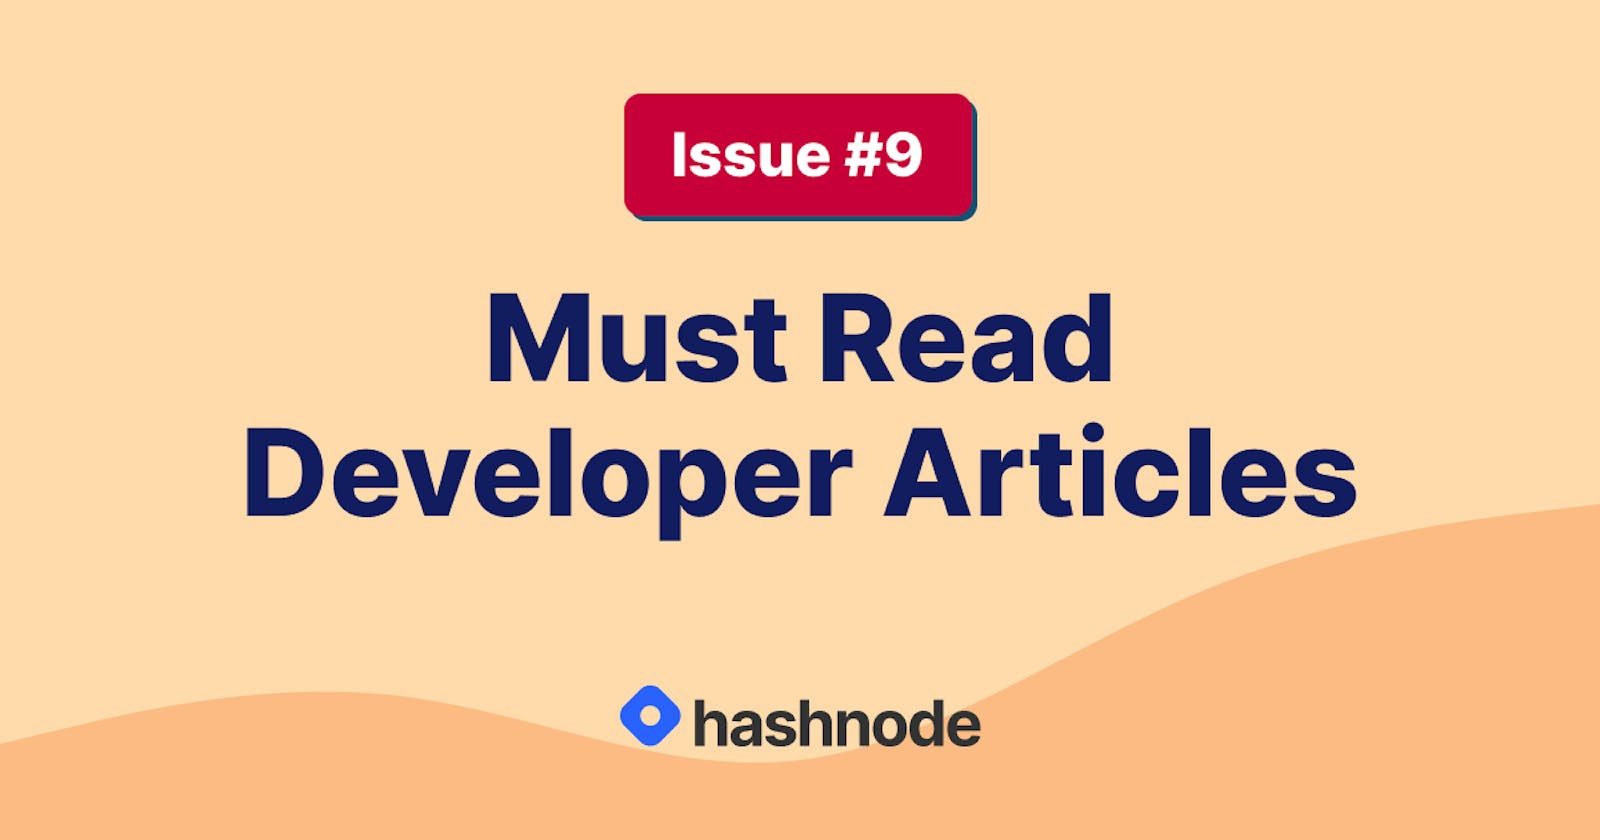 Must Read Developer Articles on Hashnode - #9